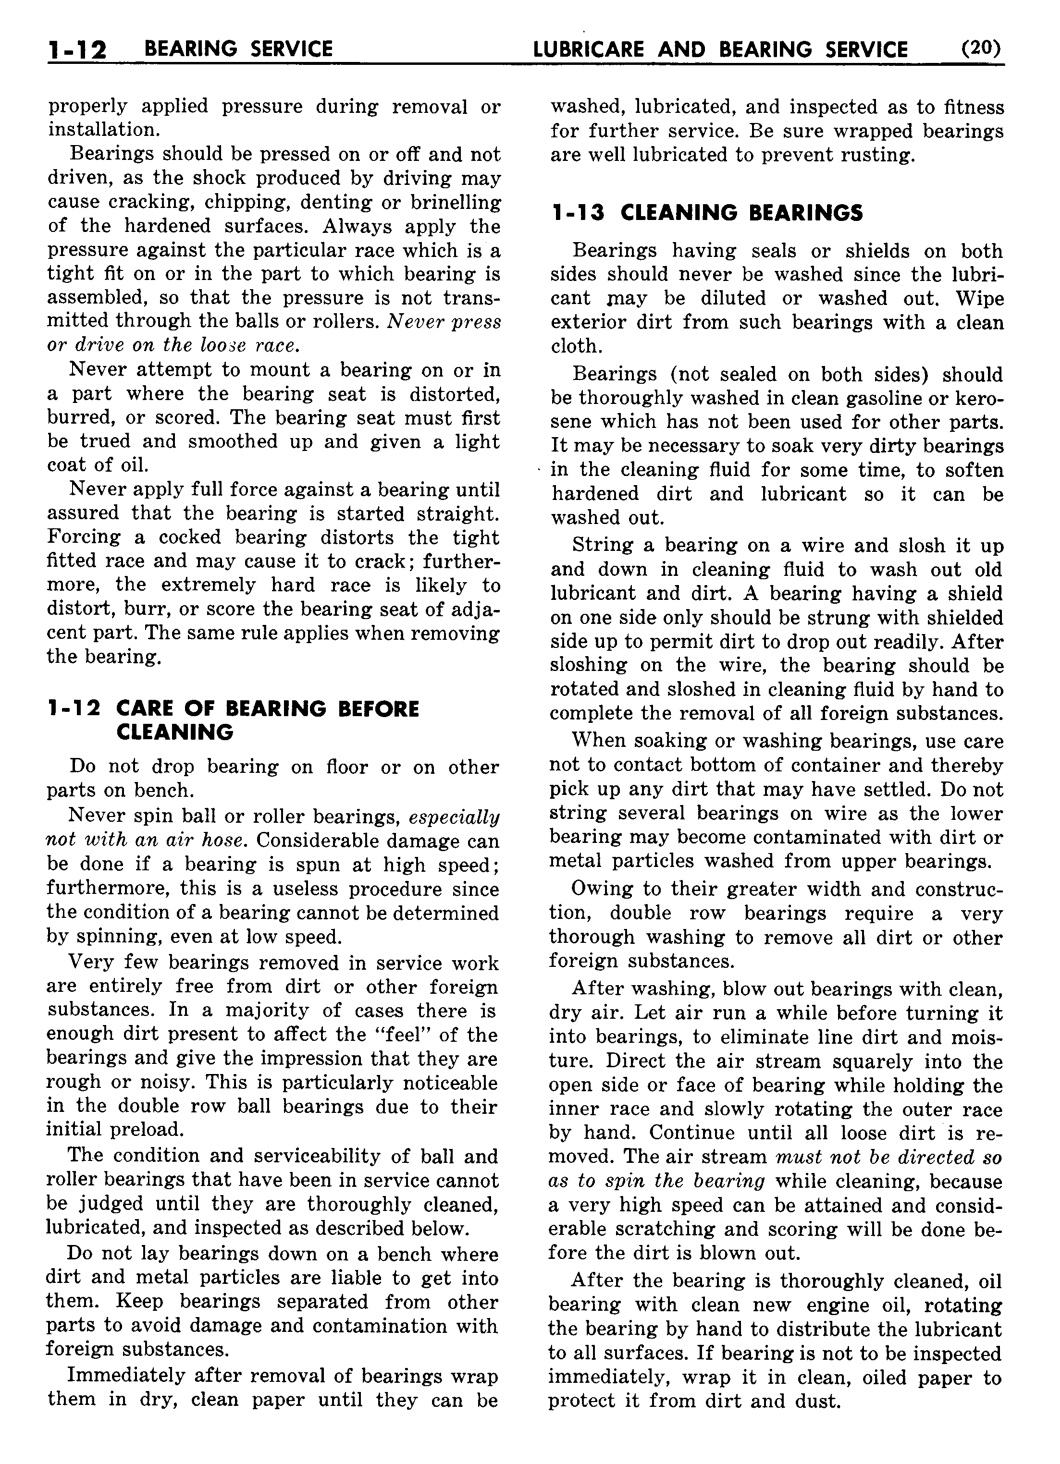 n_02 1948 Buick Shop Manual - Lubricare-012-012.jpg